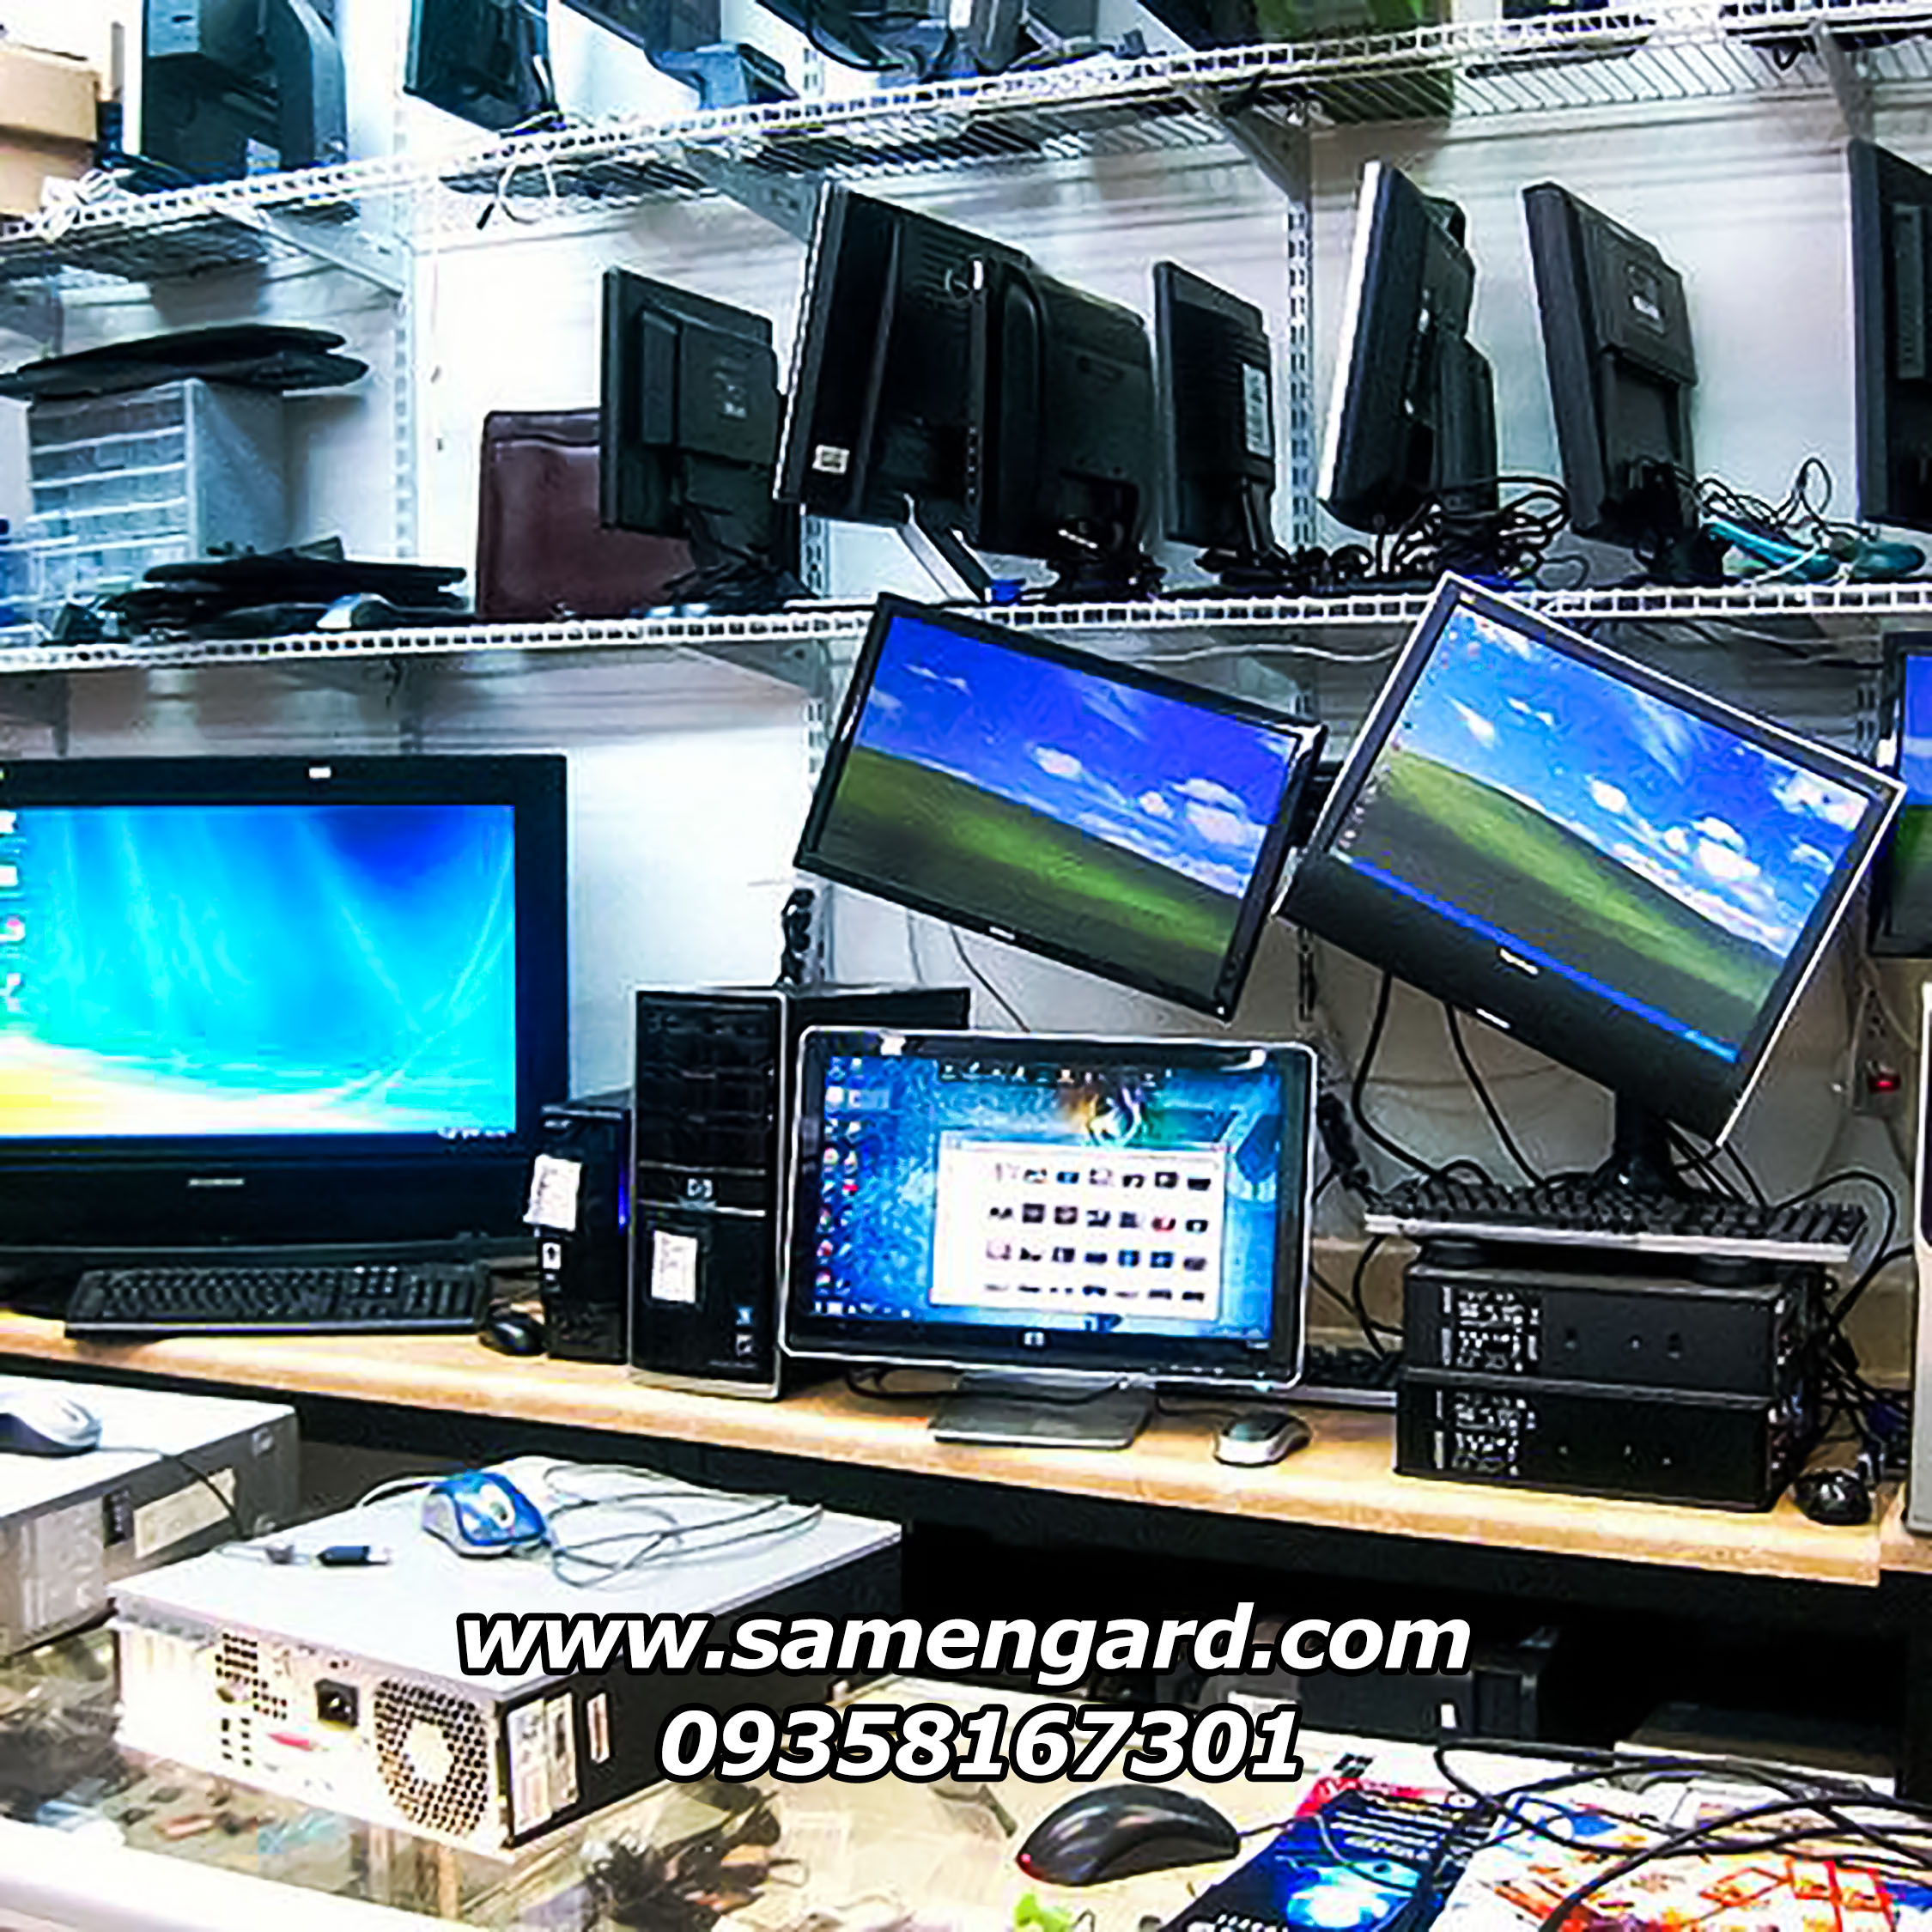 خدمات کامپیوتر و شبکه در نصیرآباد و شهرک صنعتی نصیر آباد